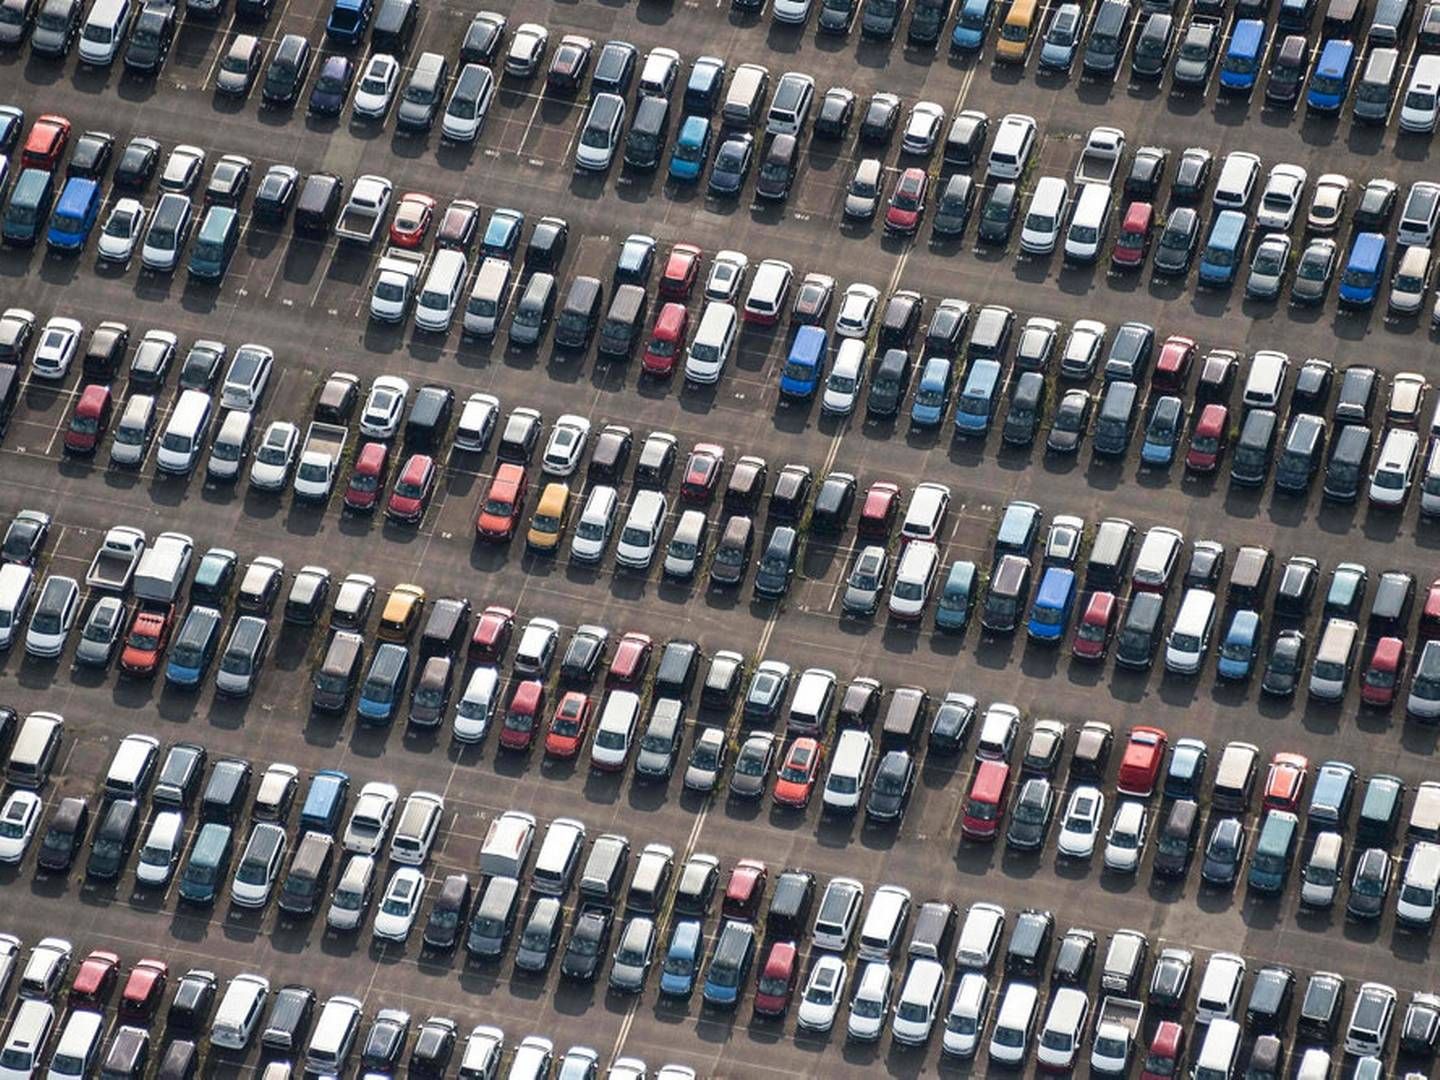 Antallet af nyregistrerede biler fortsætter med at ligge i den lave ende sammenlignet med tidligere. | Foto: Silas Stein/Ritzau Scanpix